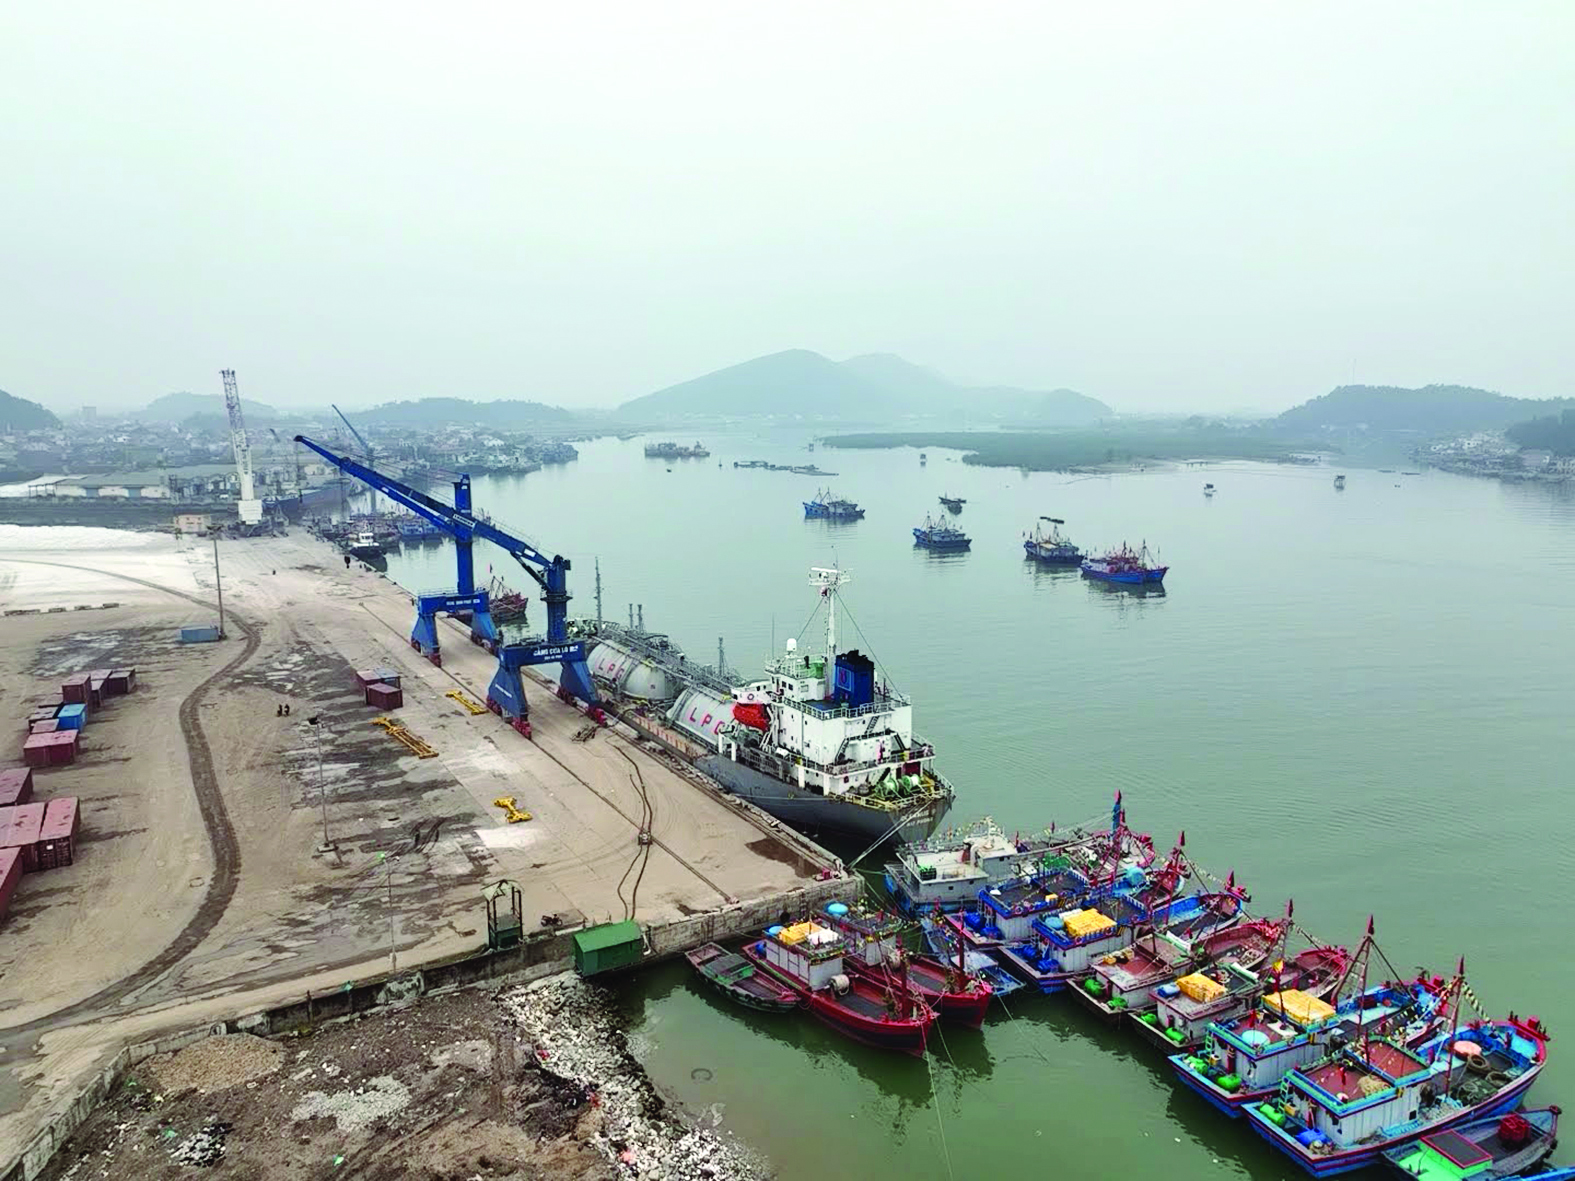  Hệ thống cảng biển ở Nghệ An vẫn chưa thể phát huy hết được tiềm năng, lợi thế do vướng hạ tầng